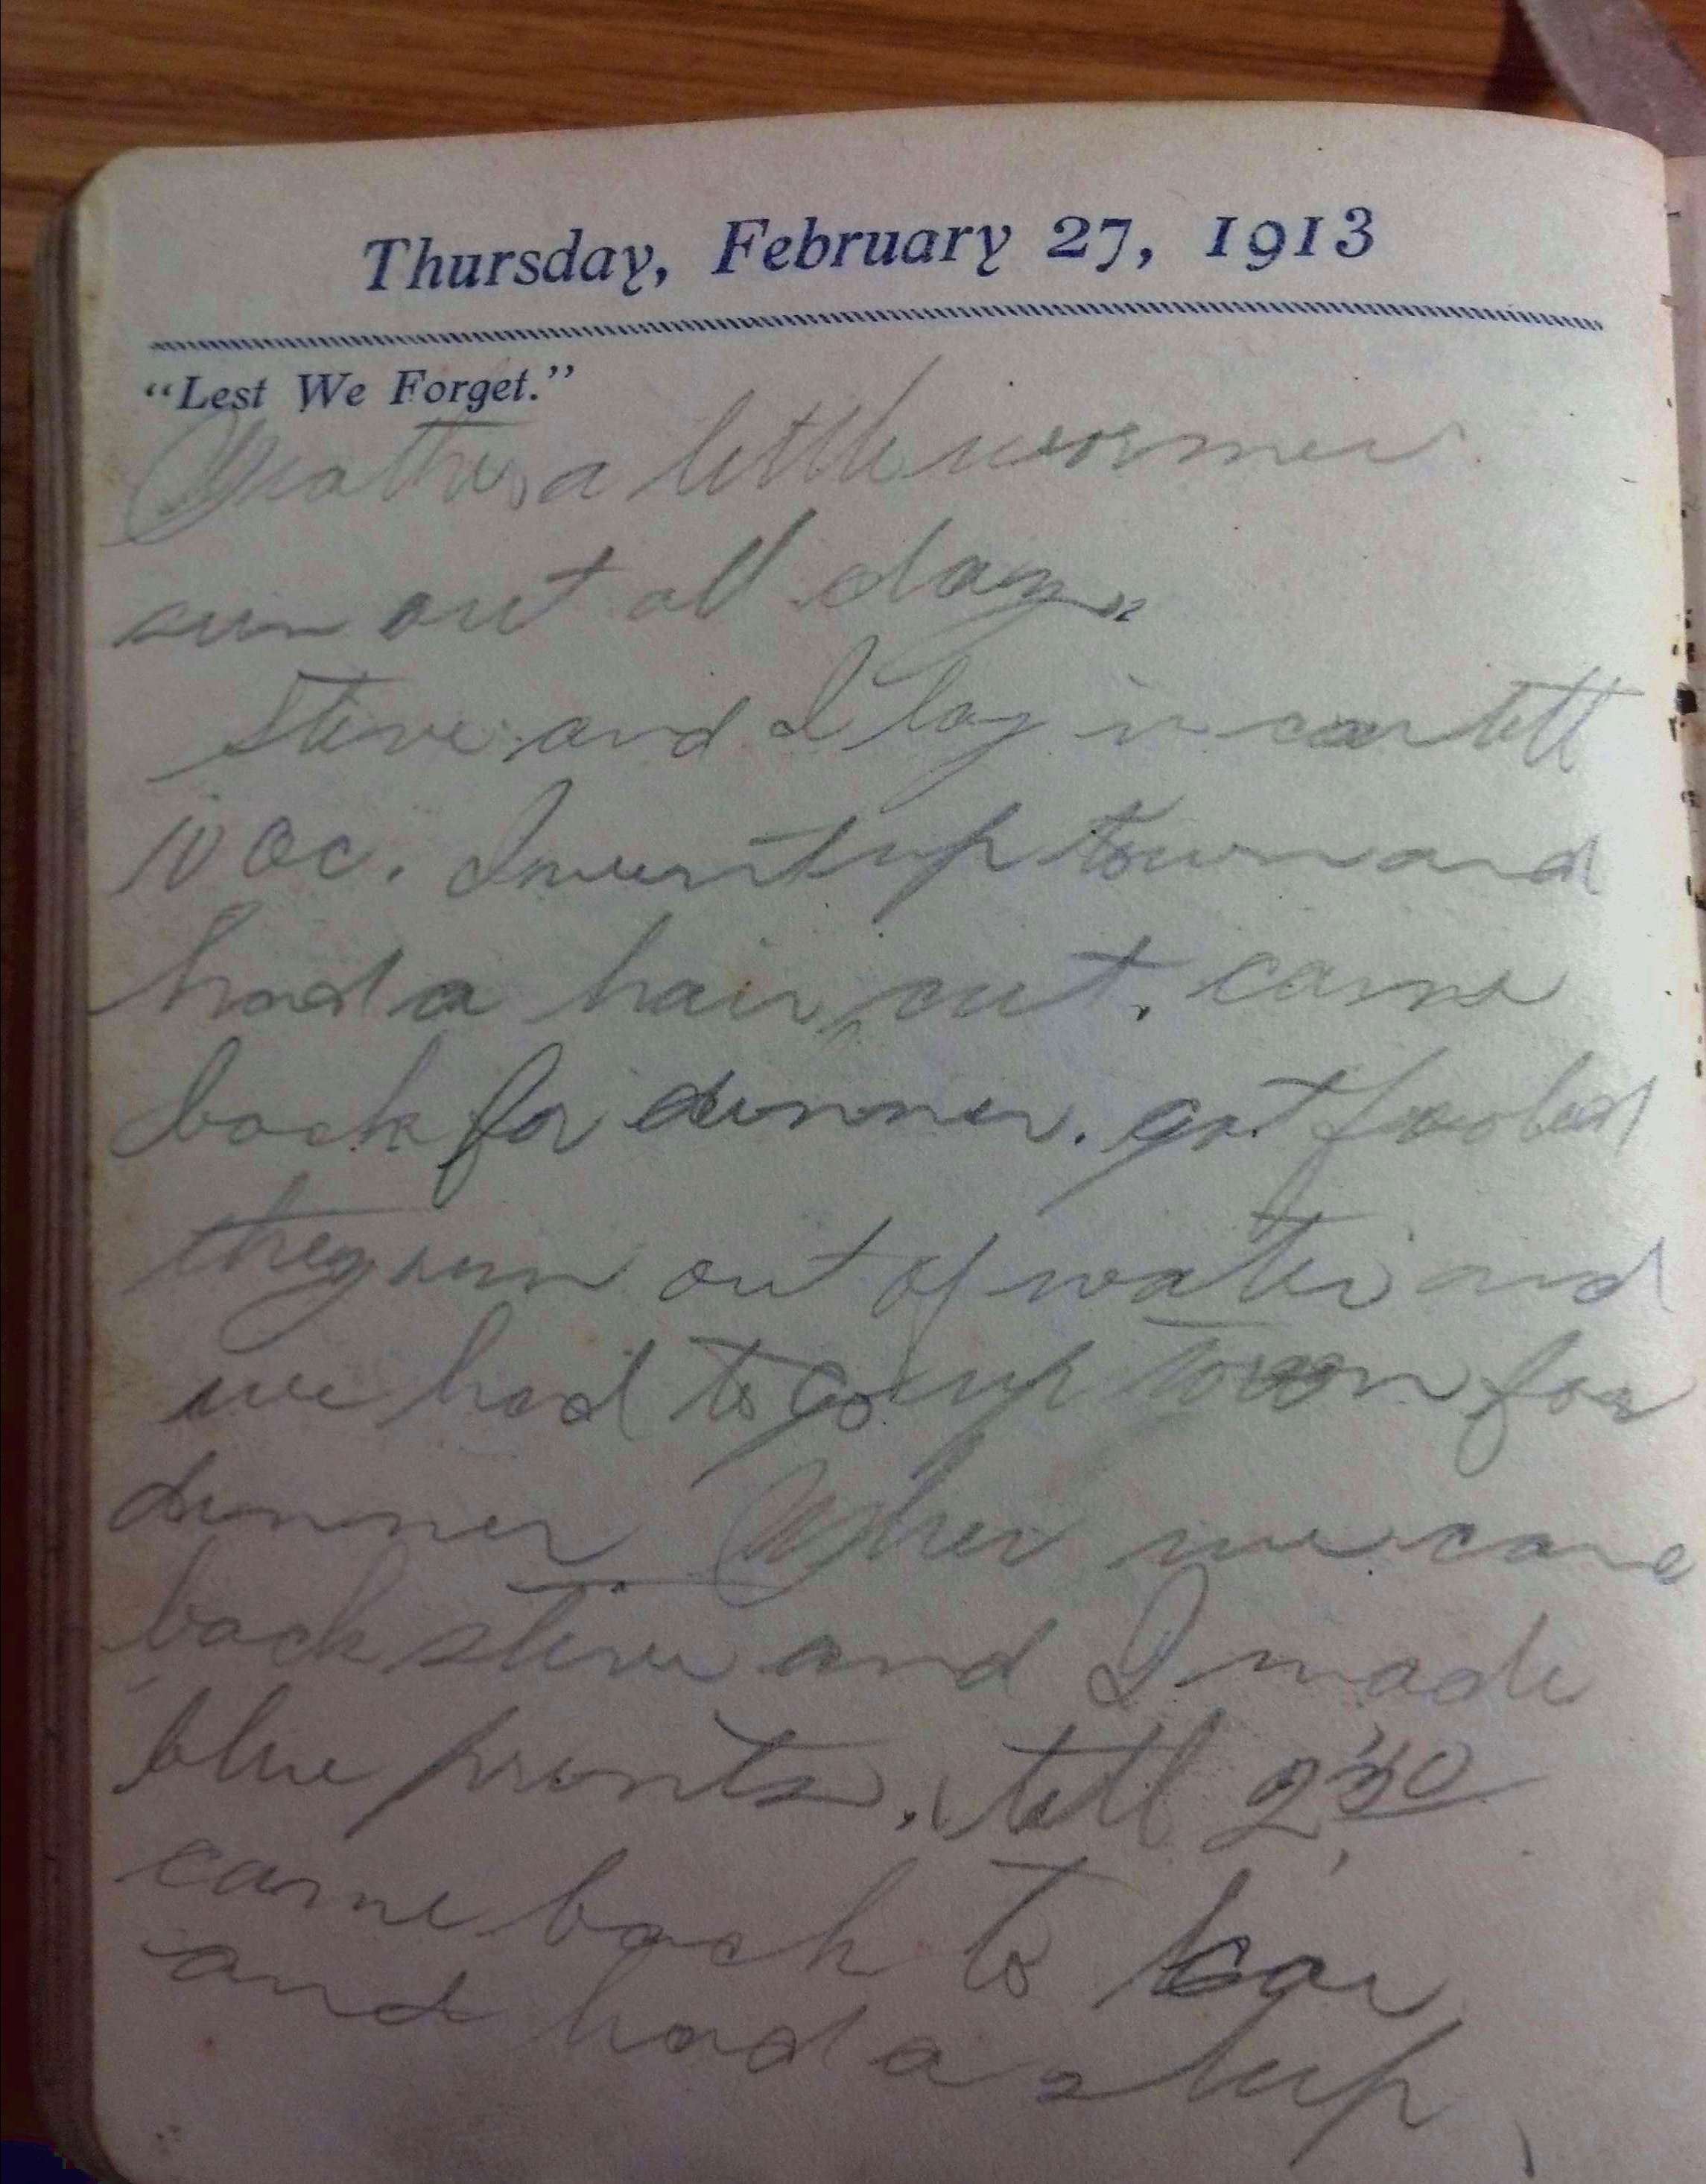 "Lest We Forget" Thursday, February 27, 1913